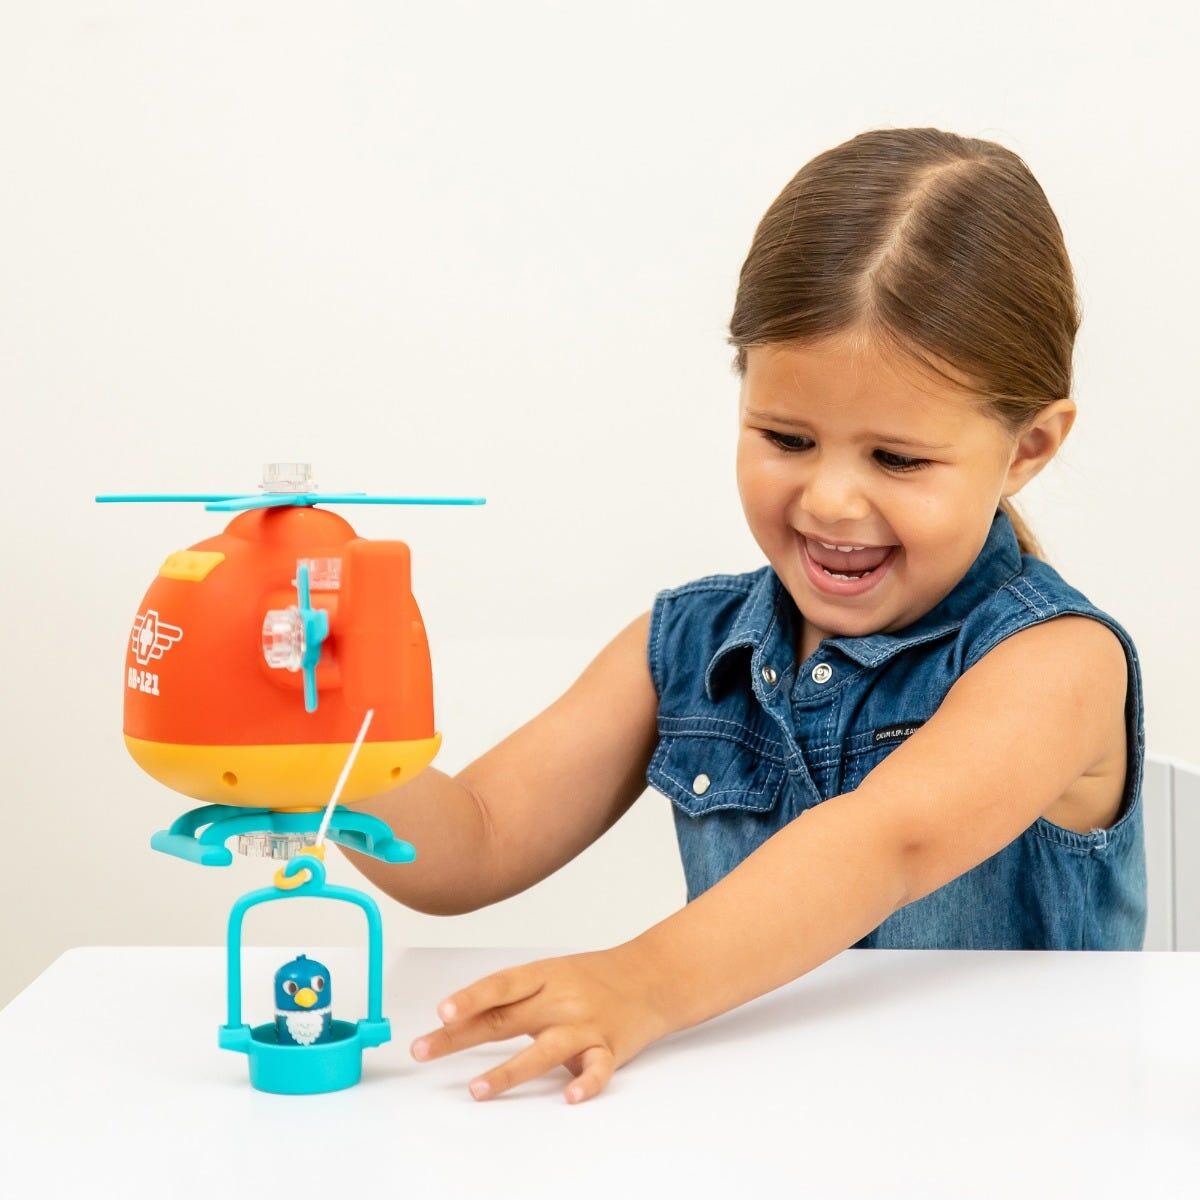 Bormasina Magica - Elicopterul de salvare PlayLearn Toys